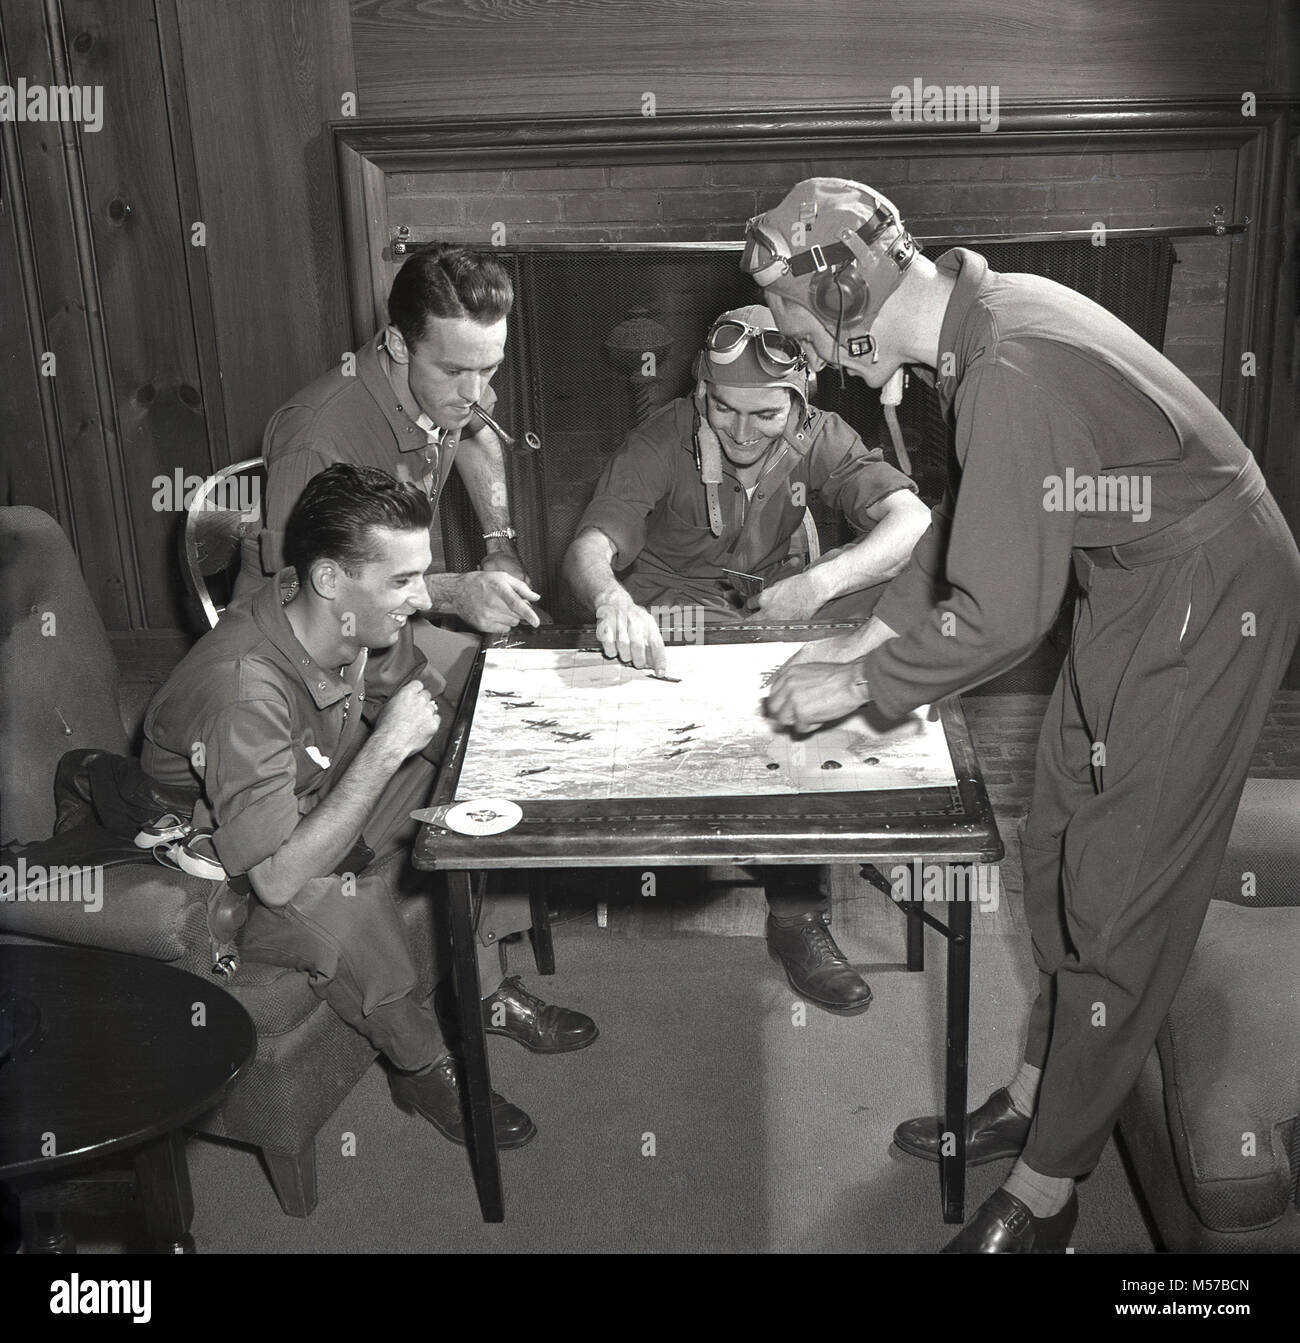 1942, USA, historische, vier Soldaten der United States Army Air Forces (Usaaf) tragen ihren fliegenden Kit in der Lounge sitzen, spielen die neuen Board Game, "Air Combat Trainer". In Verbindung mit dem Krieg der USA Abteilung produziert, das Spiel war ein Test der Fähigkeit zur Bekämpfung von Fliegen, mit Miniaturen von Kampfflugzeugen und kampfmanöver. Stockfoto